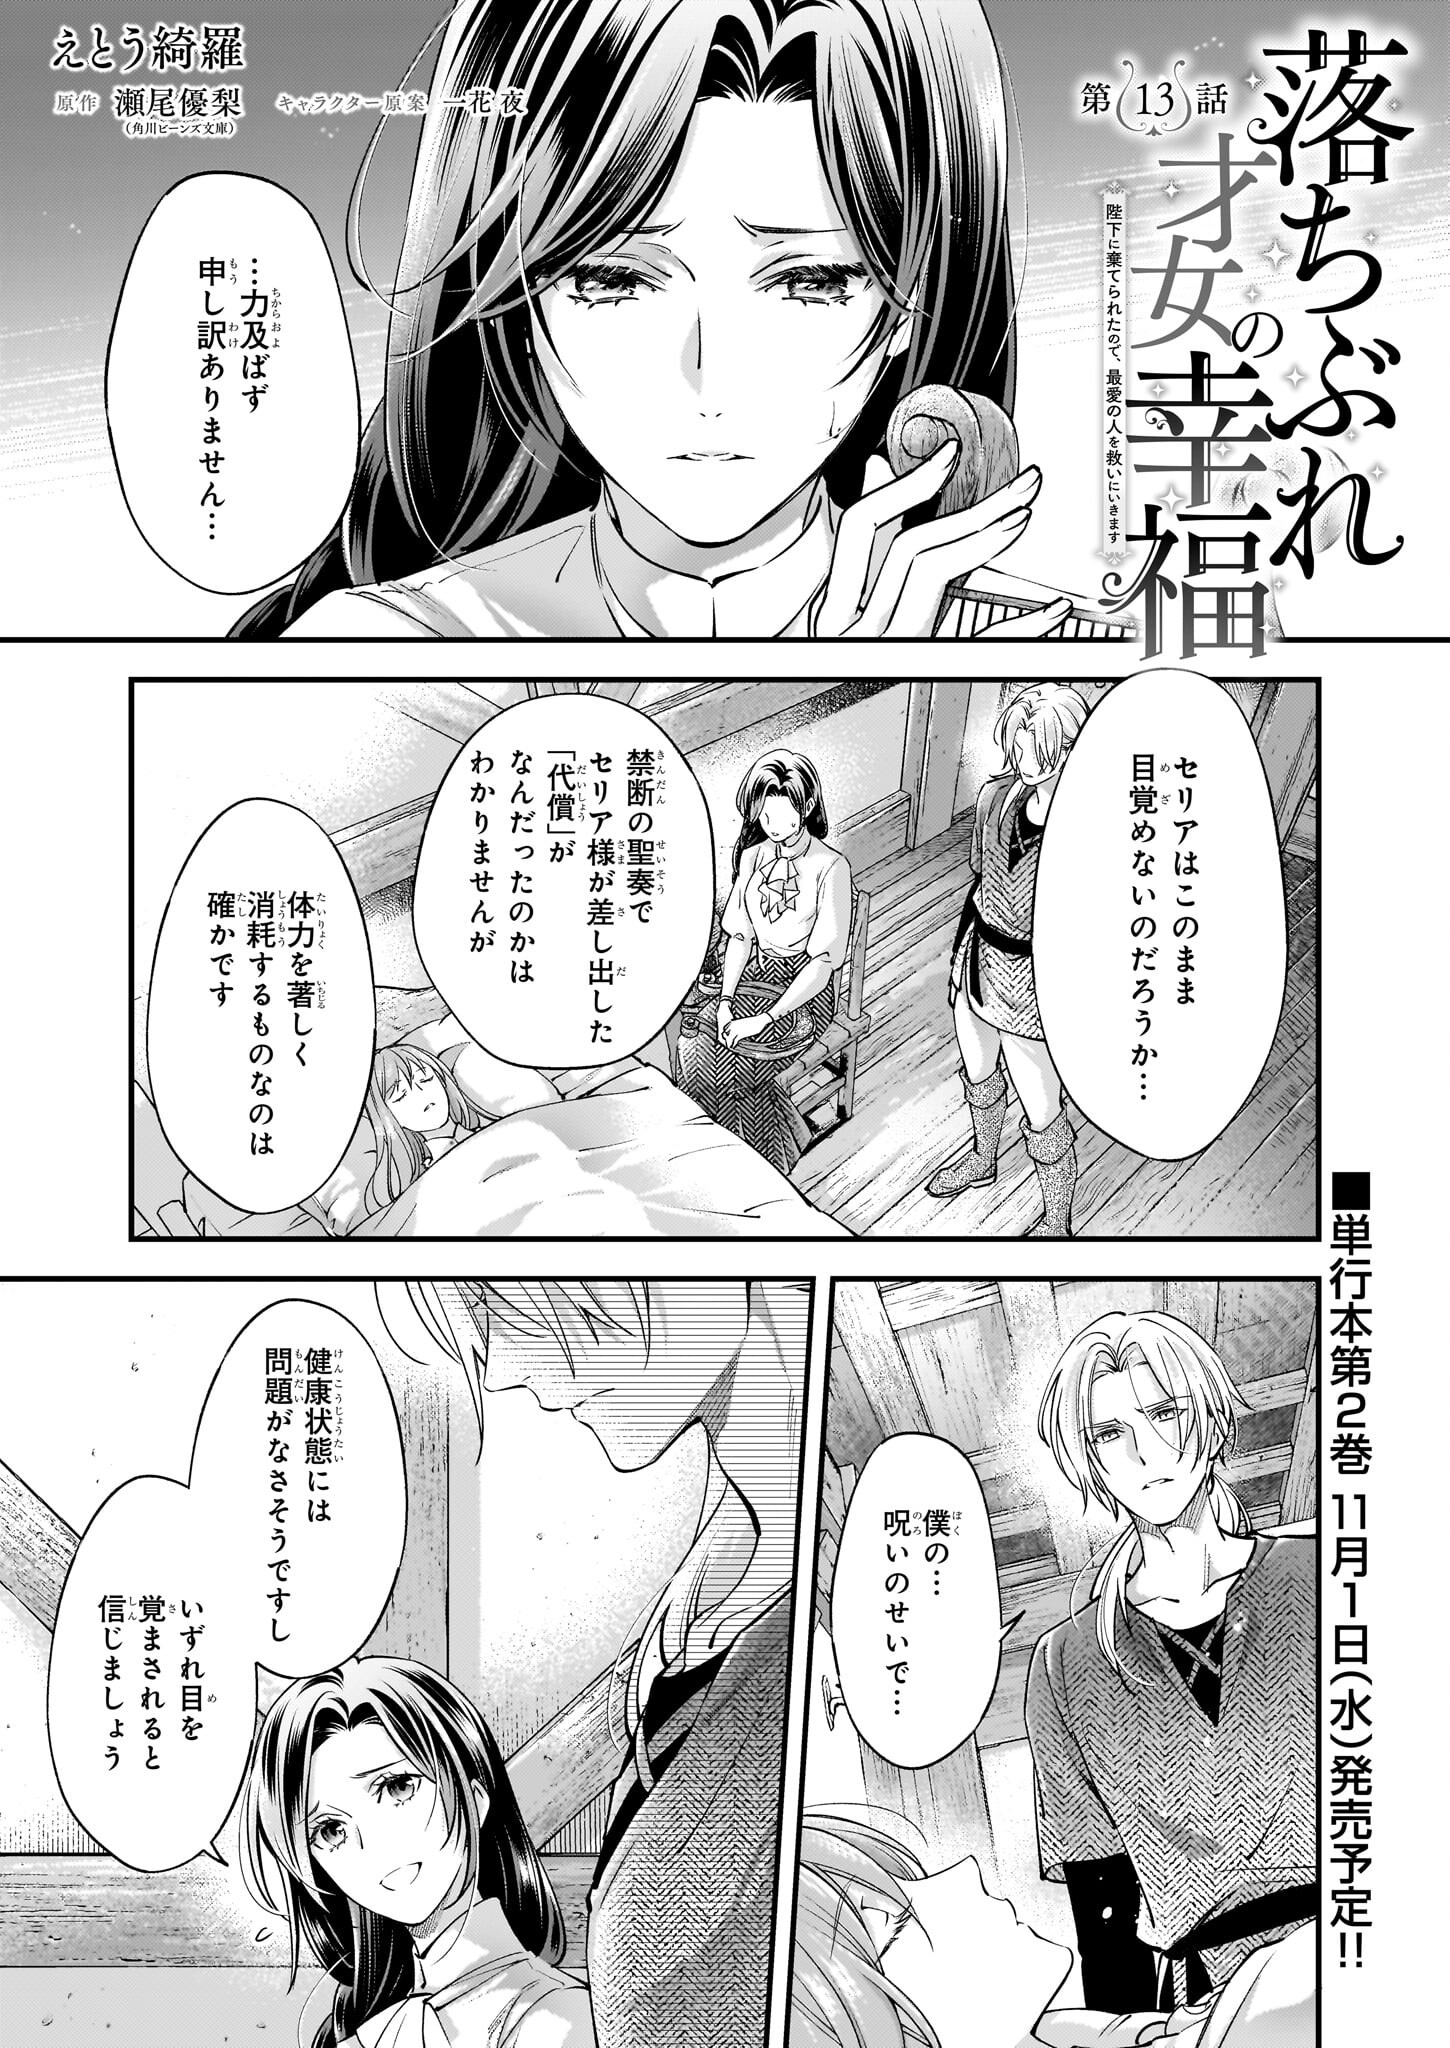 Ochibure Saijo no Koufuku – Heika ni Suterareta no de, Saiai no Hito wo Sukui ni ikimasu - Chapter 13 - Page 1